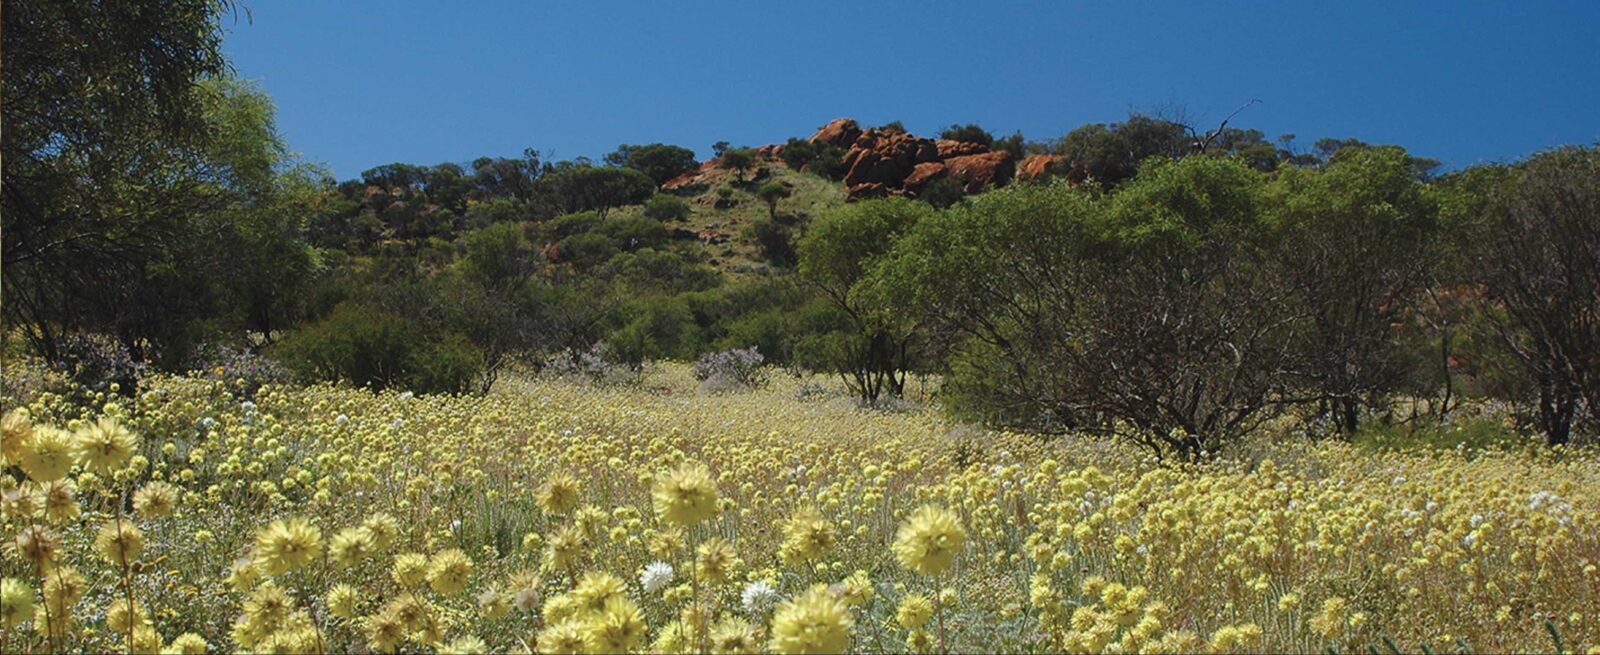 Koolanooka Springs, Morawa, Western Australia